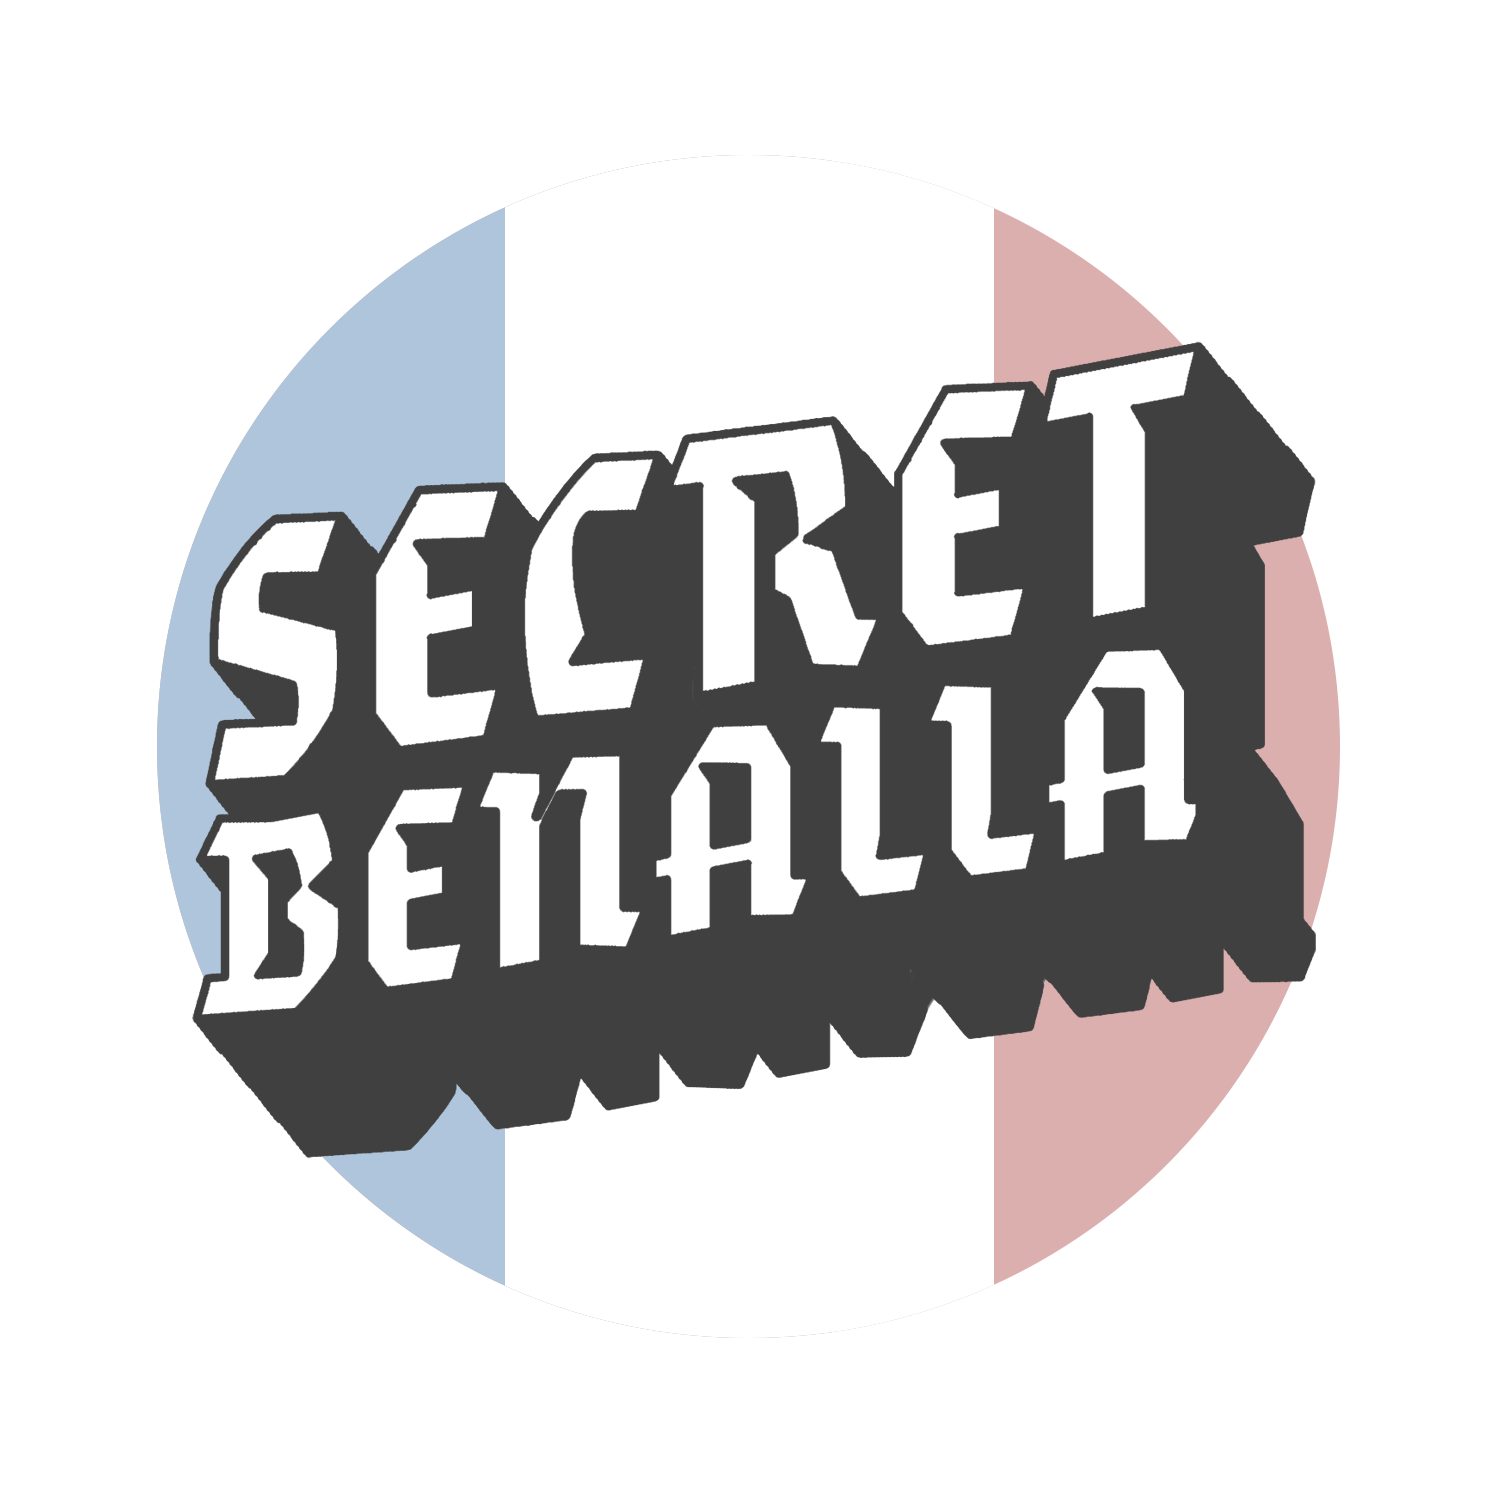 Secret Benalla est un jeu d'identité secrète qui n'est absolument pas basé sur un scandale d'état réel.
Juré.
https://t.co/EJpkAZeMyv